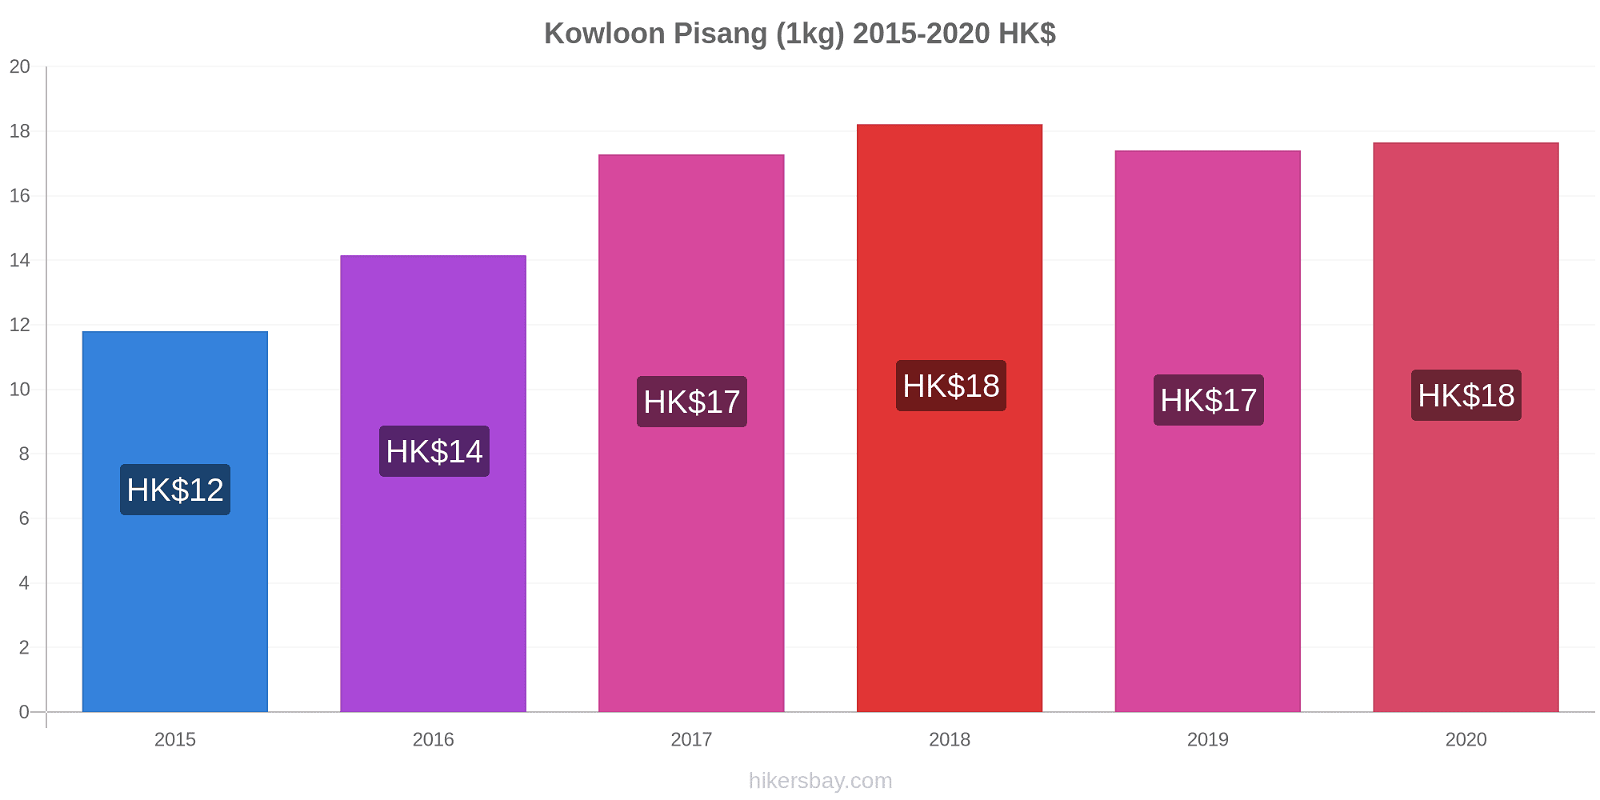 Kowloon perubahan harga Pisang (1kg) hikersbay.com